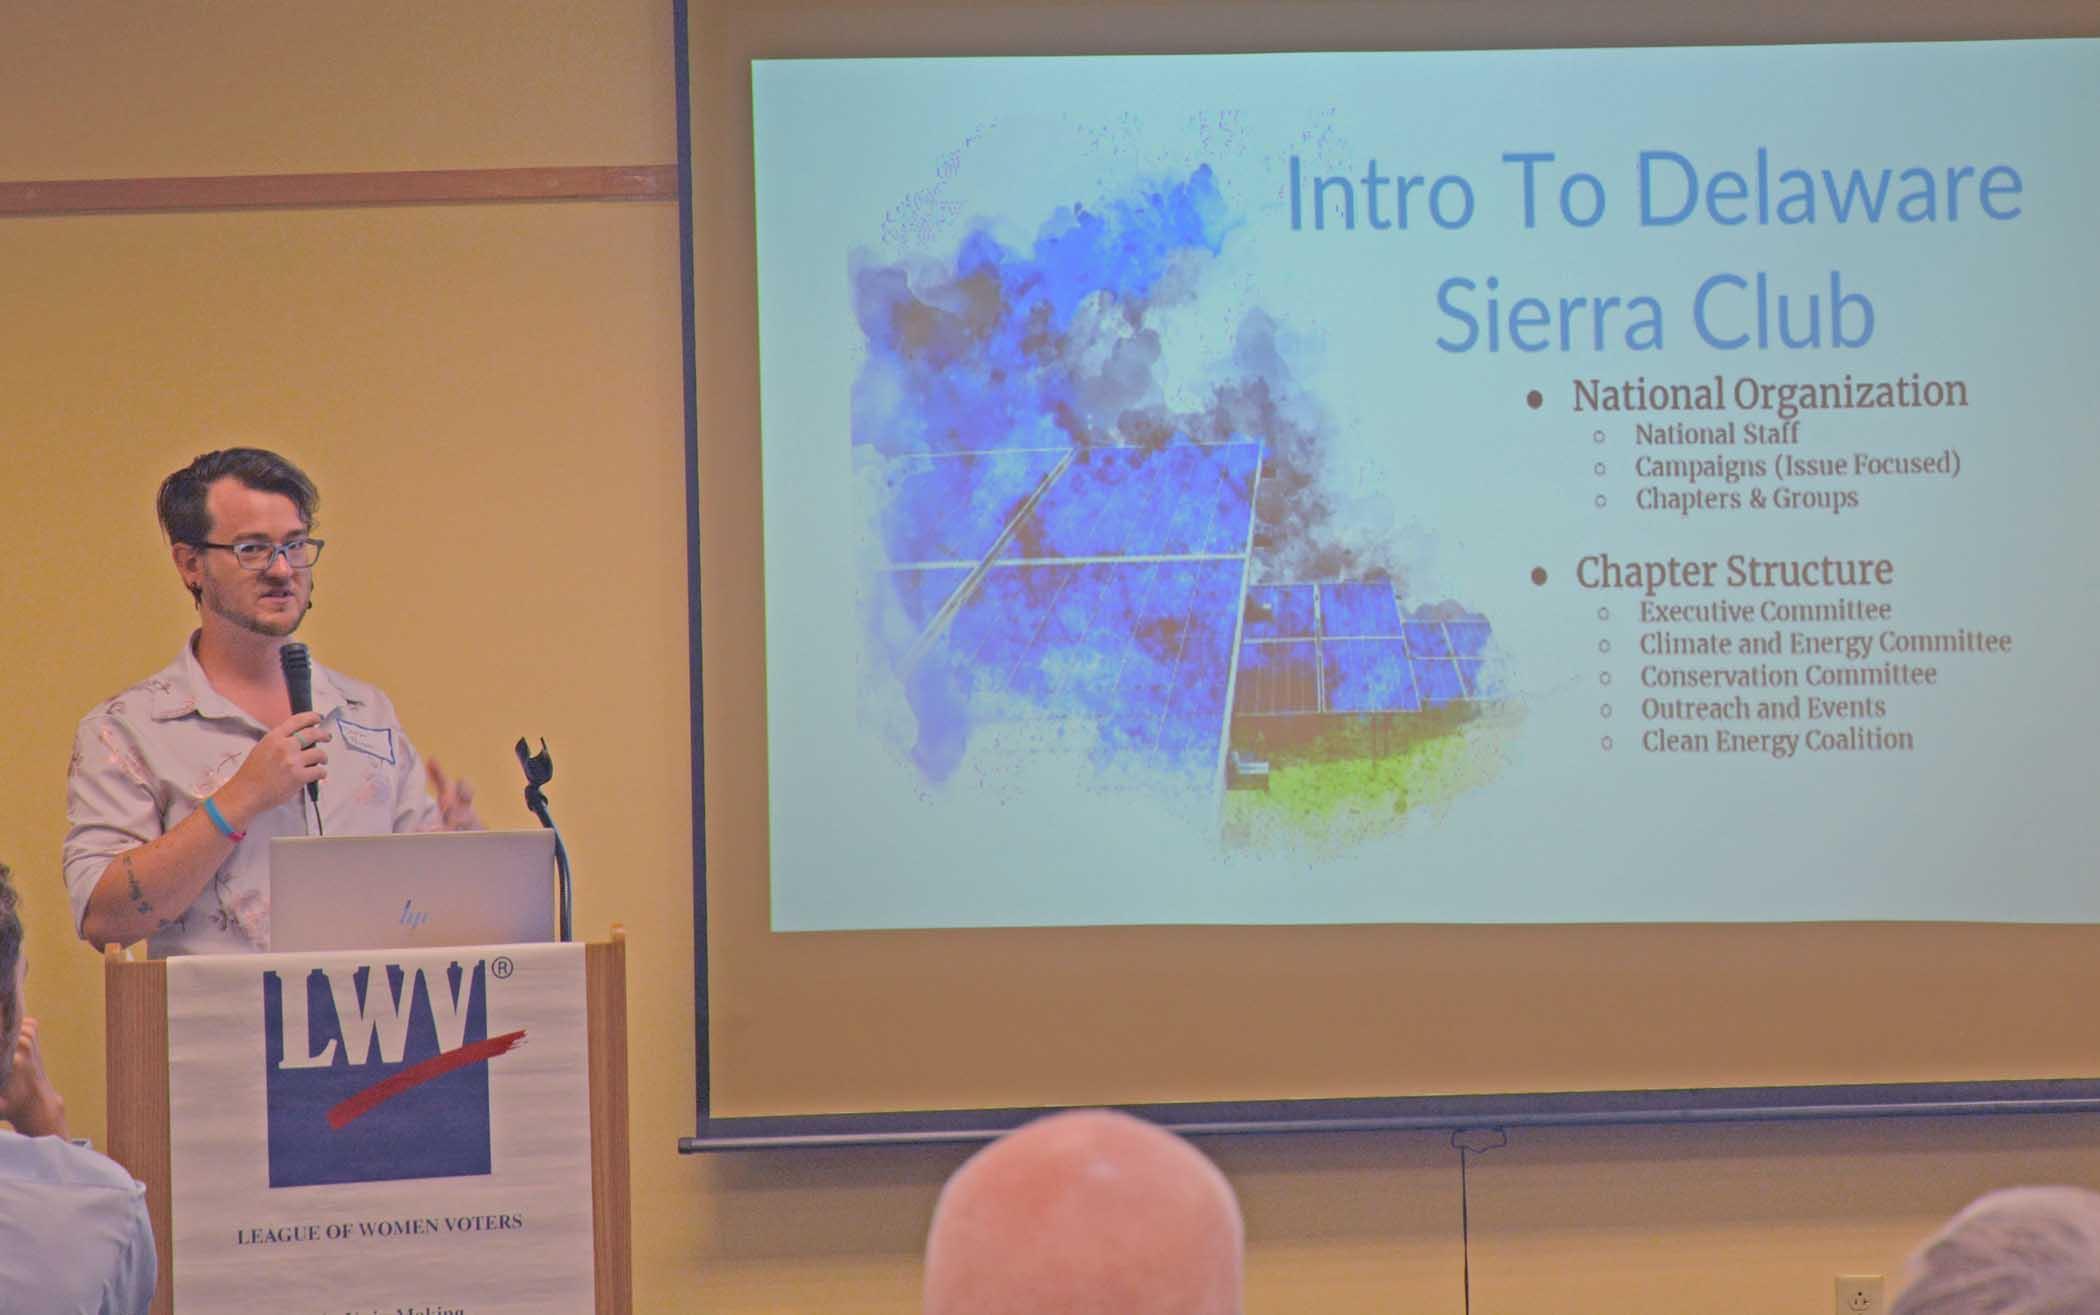 Speaker Dustyn Thompson, "Intro to Delaware Sierra Club" slide